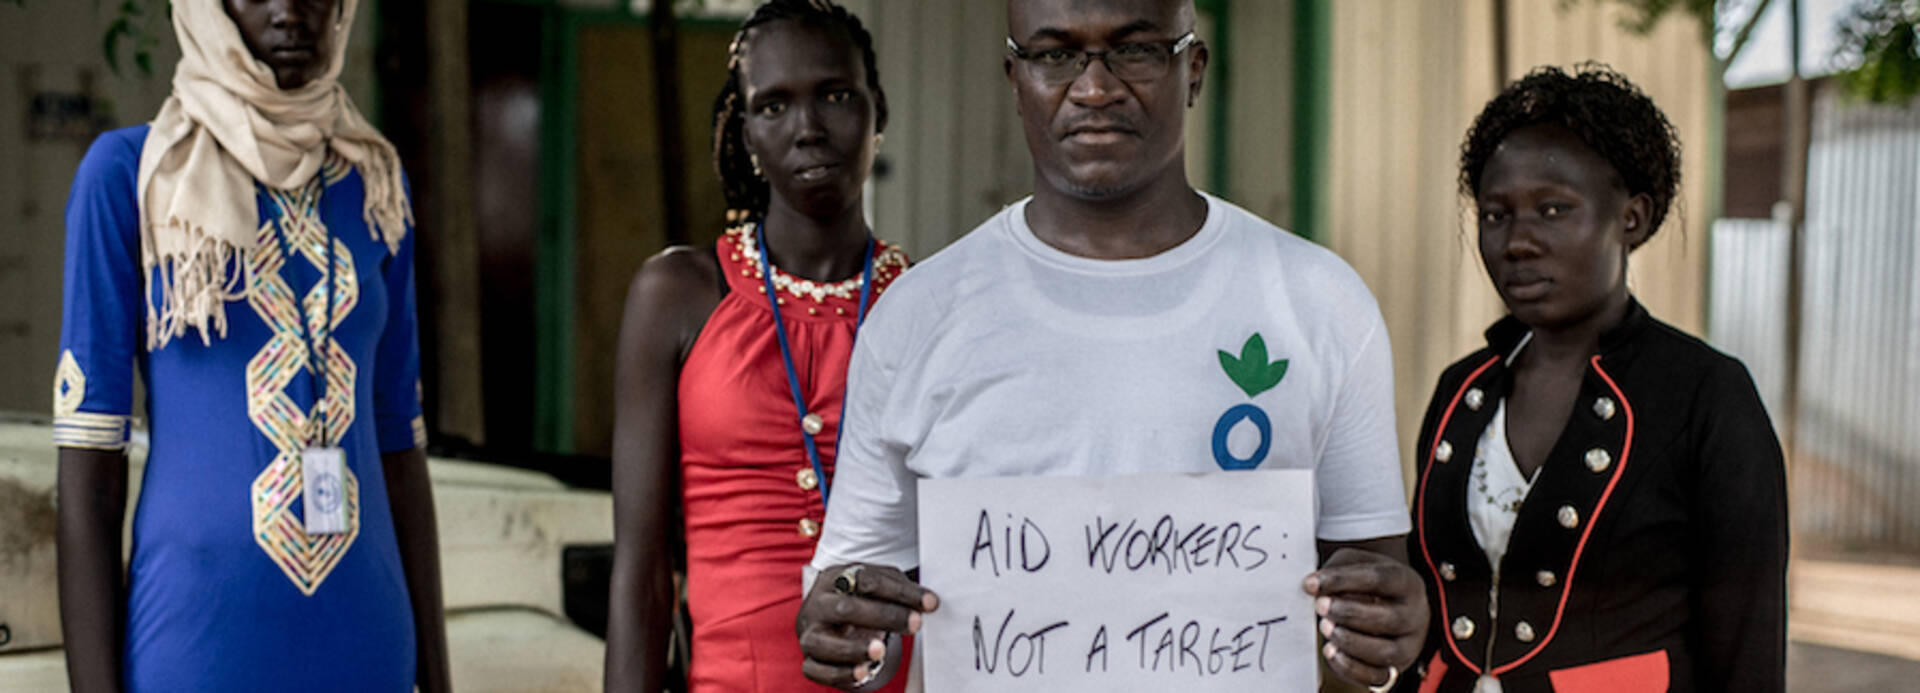 Mitarbeiter im Südsudan fordern keine Gewalt gegen Helfer.